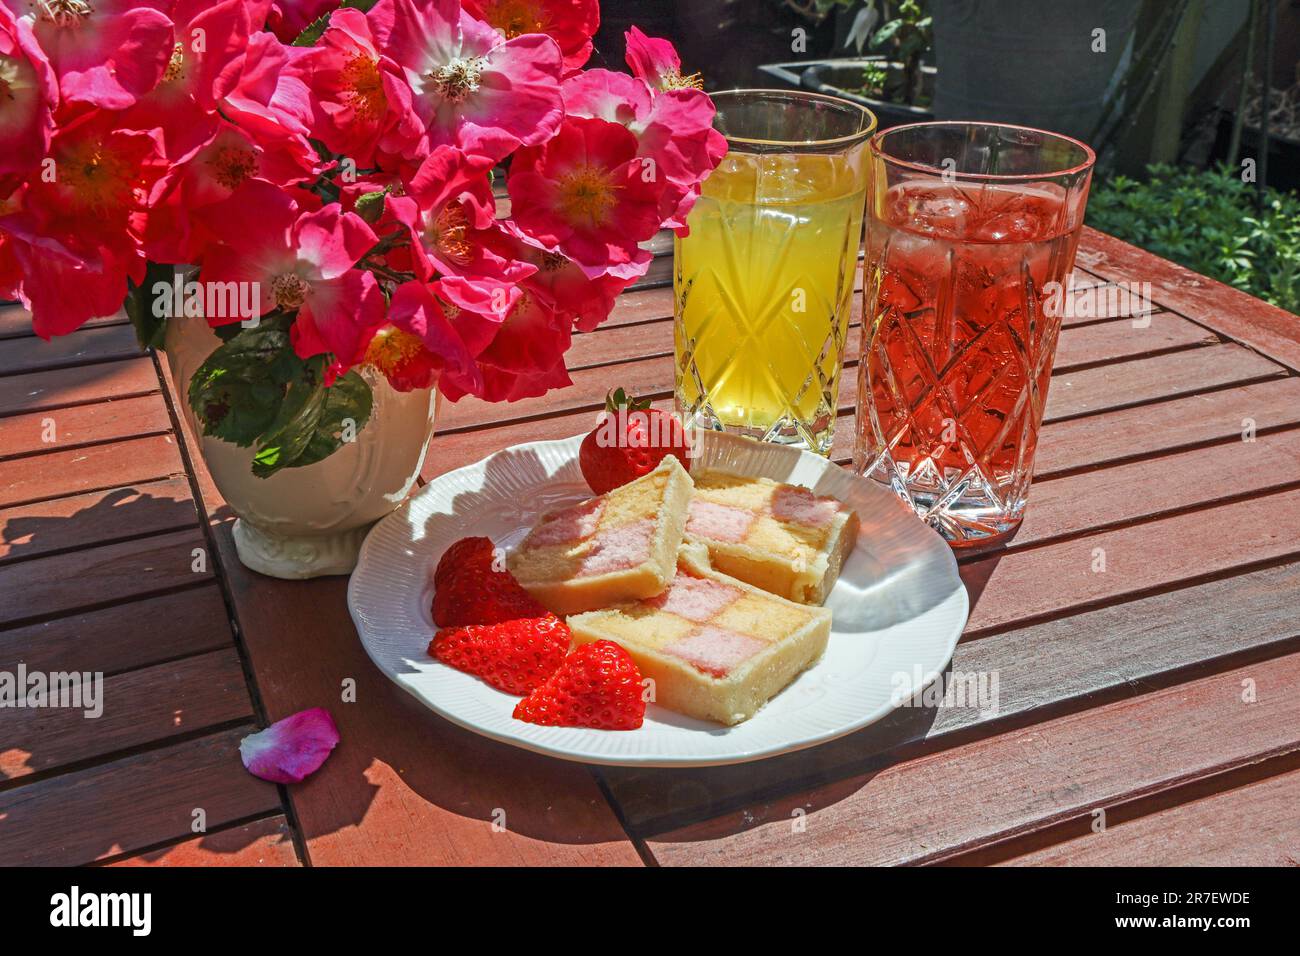 Une assiette de tranches de gâteau de battenberg sur une table de jardin en lamelles avec dronks doux et aposy de roses en rameau; Banque D'Images